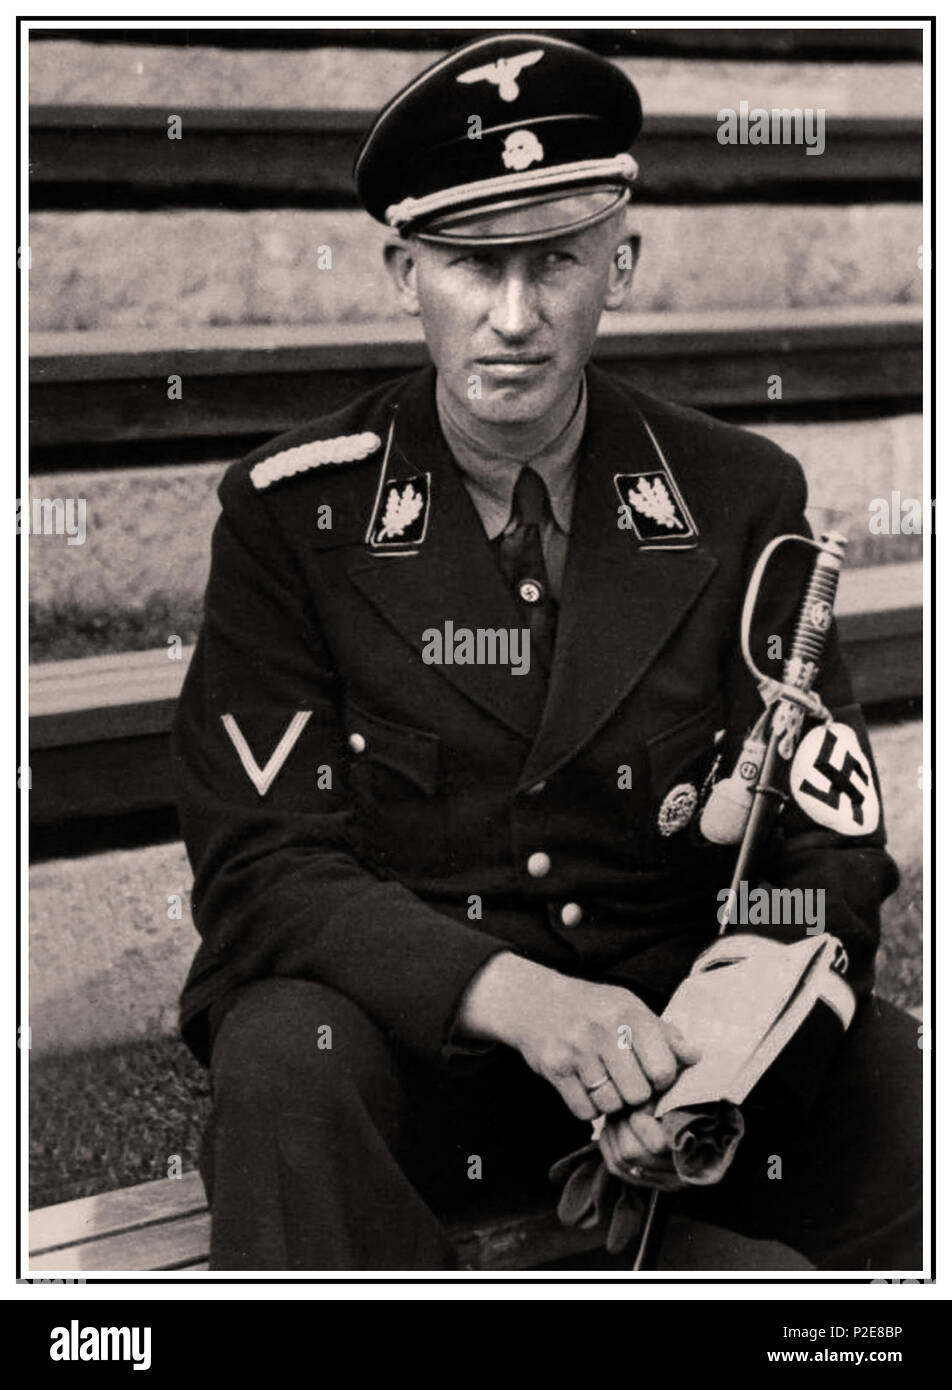 1940 HEYDRICH WAFFEN SS NAZI Reinhard Tristan Eugen Heydrich war ein hochrangiger deutscher Nazi-Beamter im Zweiten Weltkrieg und ein Hauptarchitekt des Holocaust. Er war SS-Obergruppenführer und General der Polizei sowie Chef des Reichssicherheitshauptamtes. Einer von Adolf Hitlers vertrauenswürdigen und bevorzugten Offizieren. Ermordet von selbstaufopferungsvollen mutigen tschechischen Widerstandskämpfern 4. Juni 1942, Prag, Tschechische Republik Stockfoto